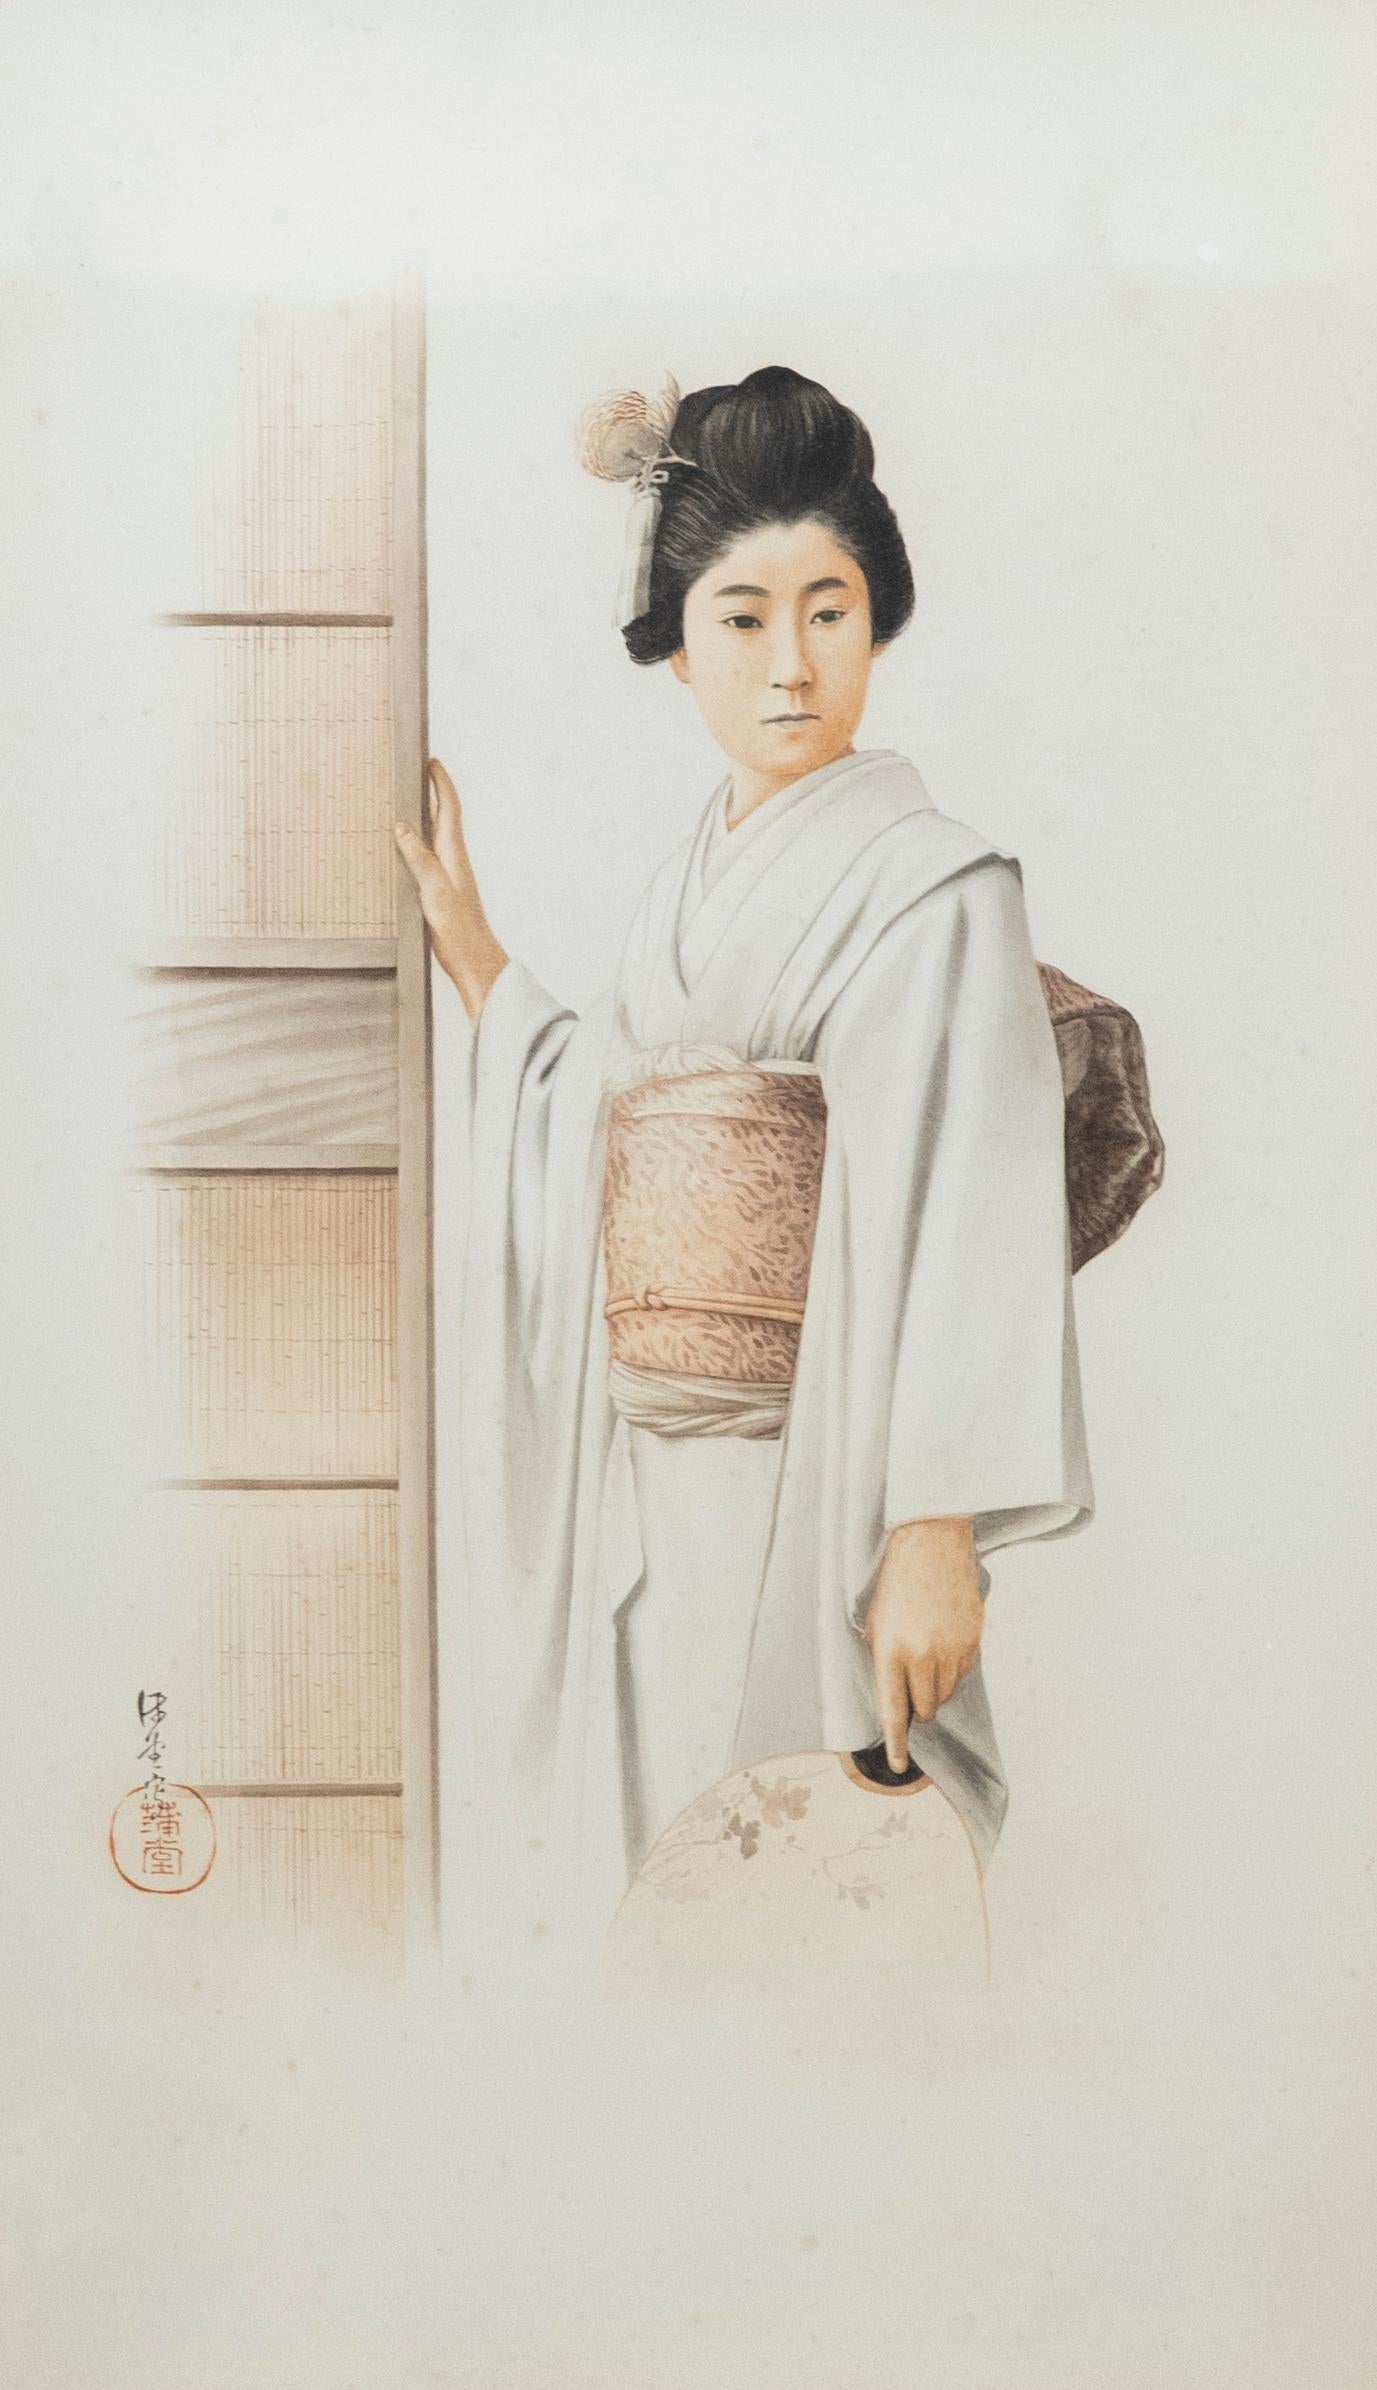 Gerahmtes Aquarell des 20. Jahrhunderts – Porträt einer japanischen Dame – Art von Unknown